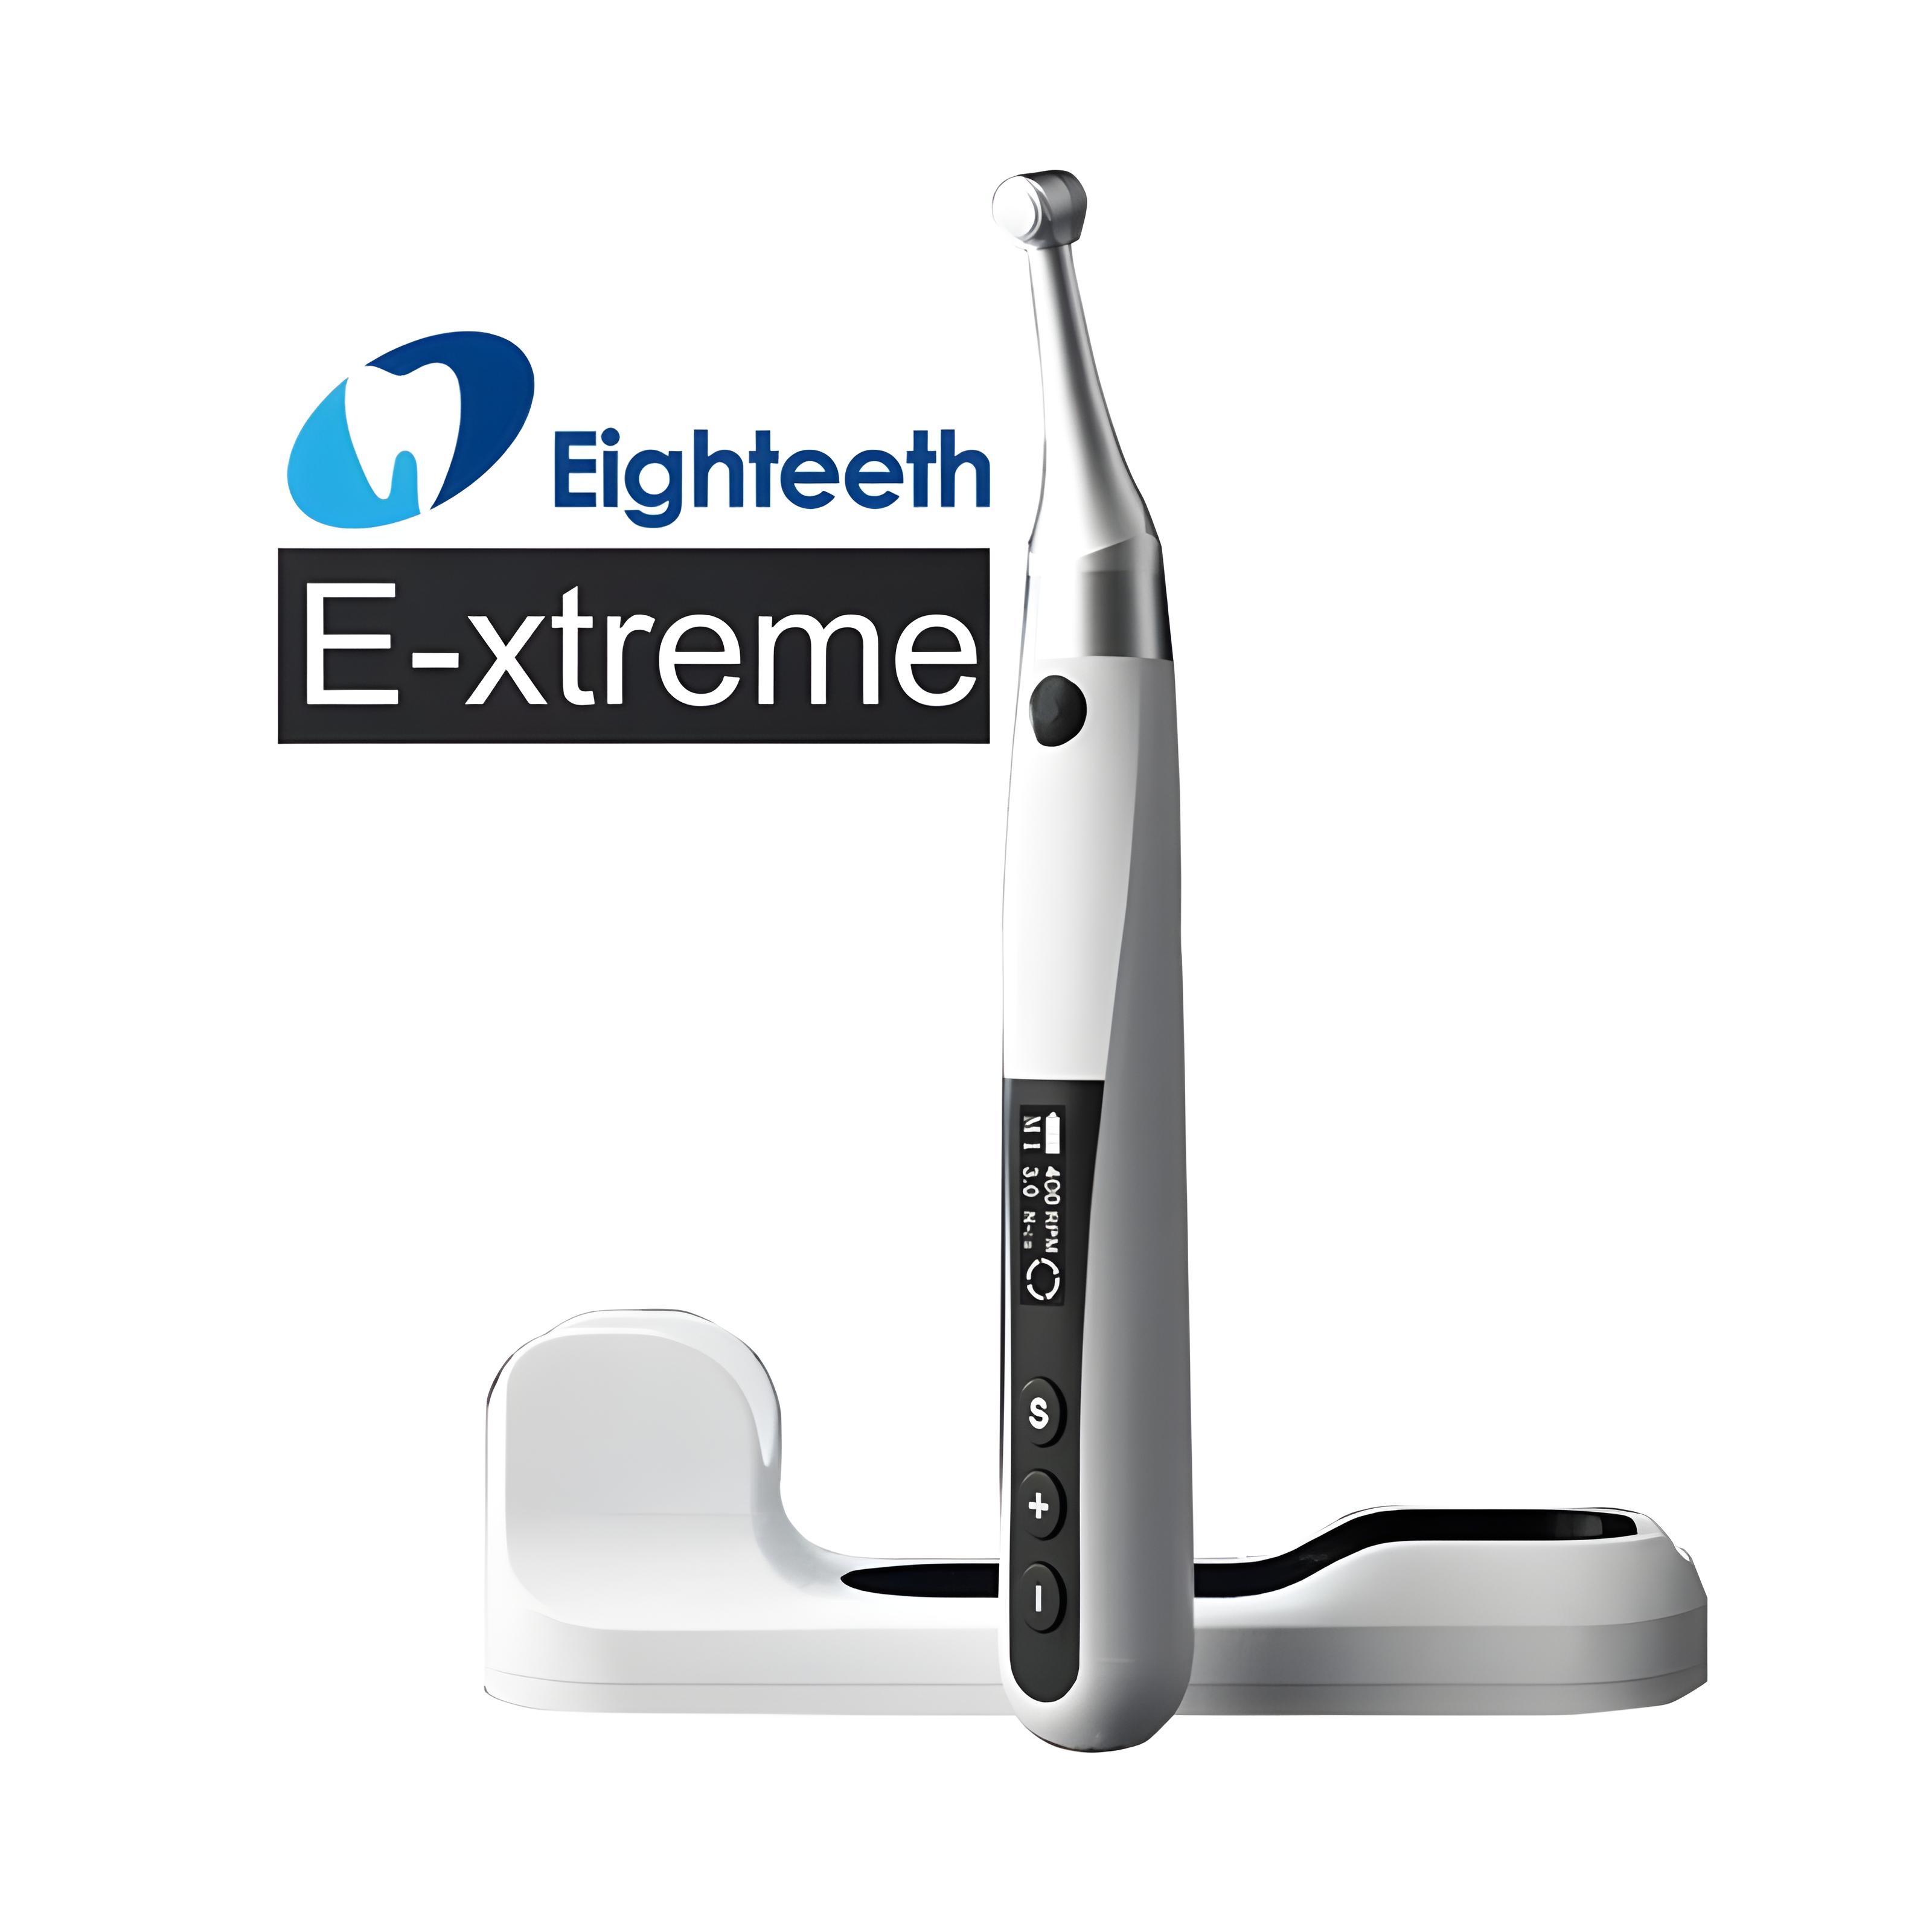 دستگاه روتاری ایتیس Eighteeth مدل E-Xtreme